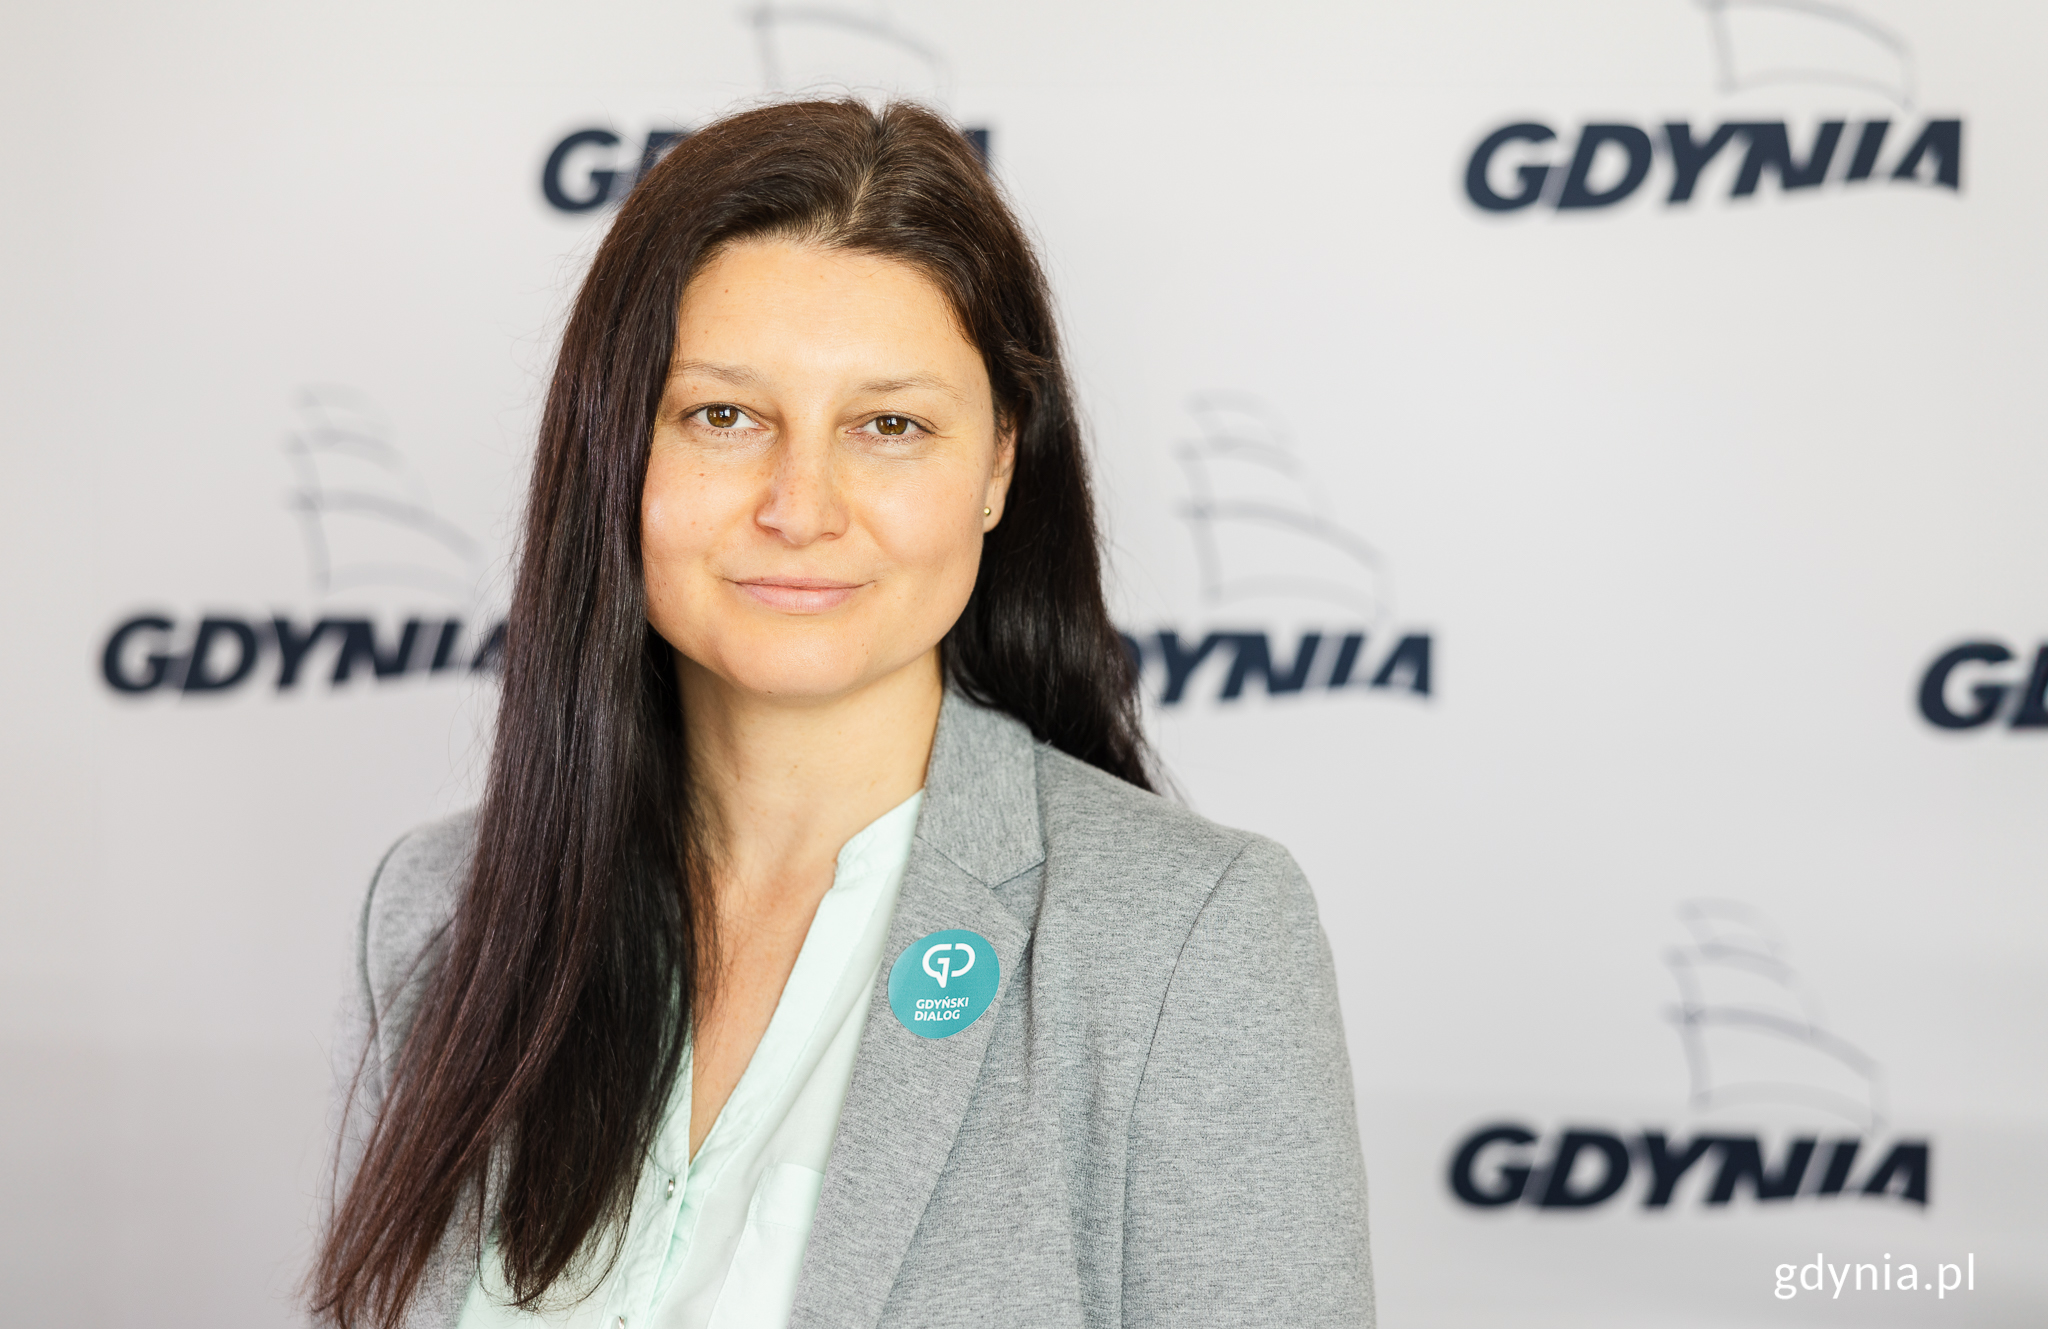 Emilia Rogała, radna Gdyni (fot. Karol Stańczak)